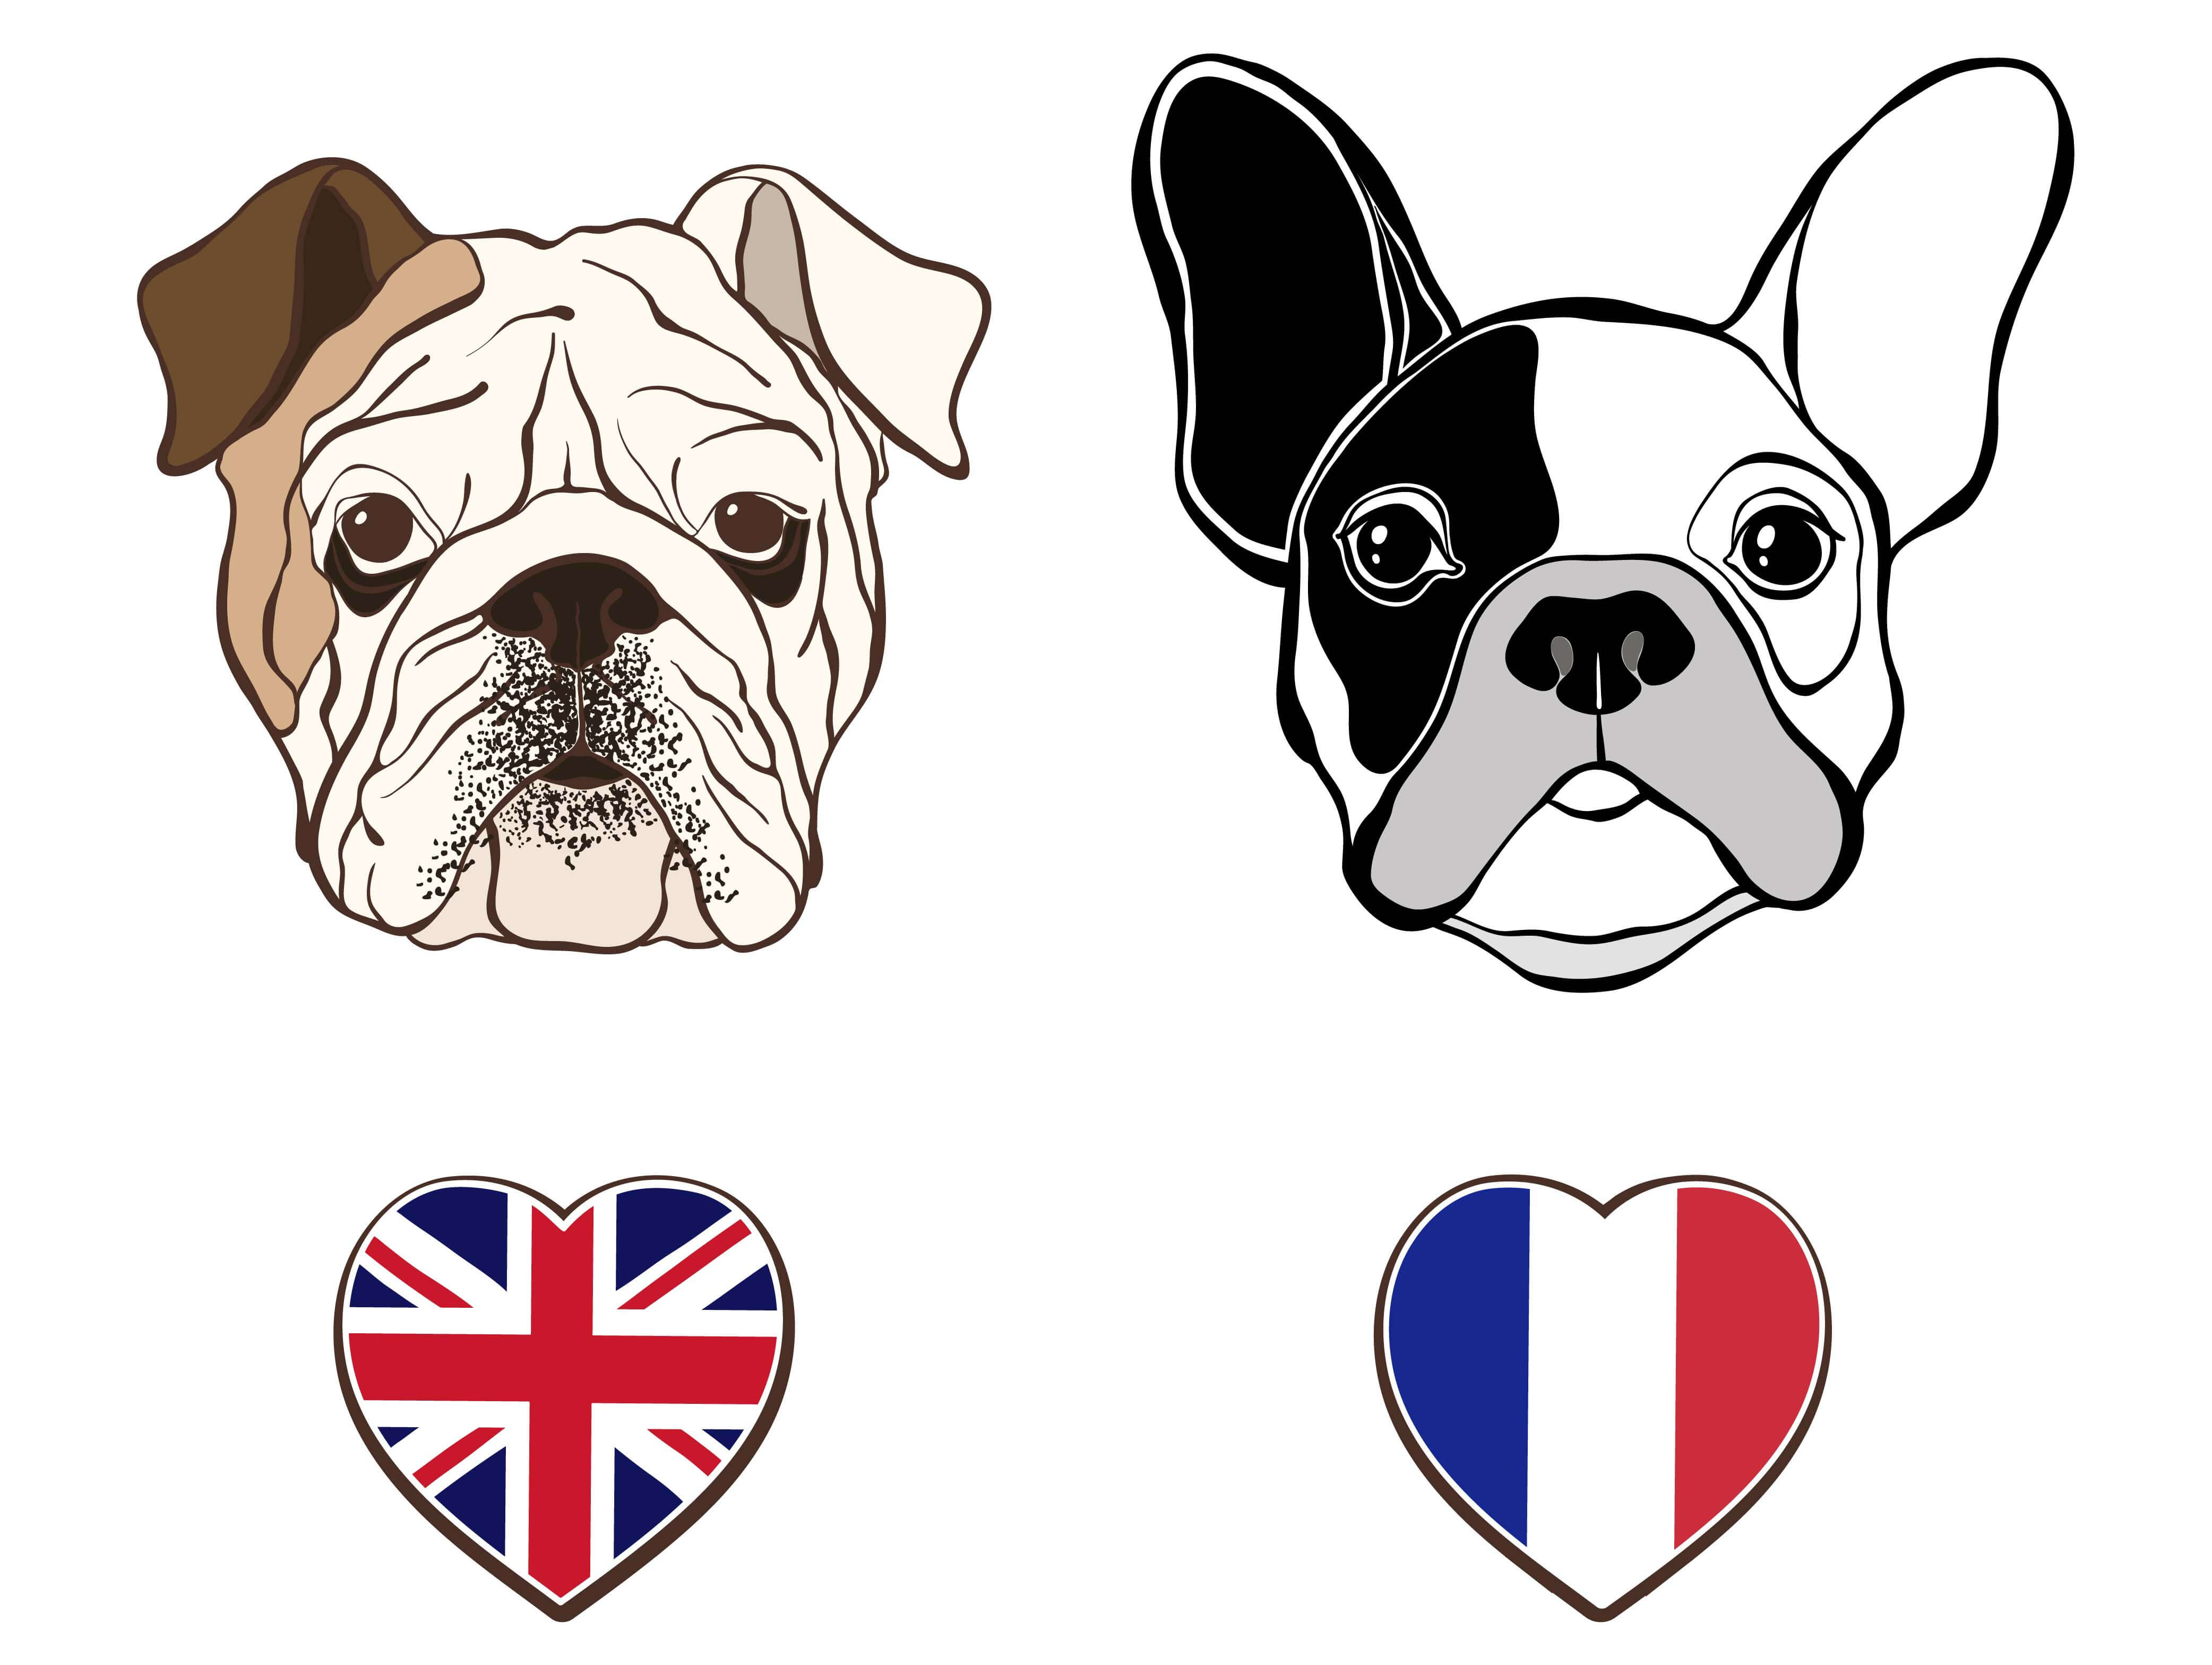 Bulldog inglés y francés: diferencias